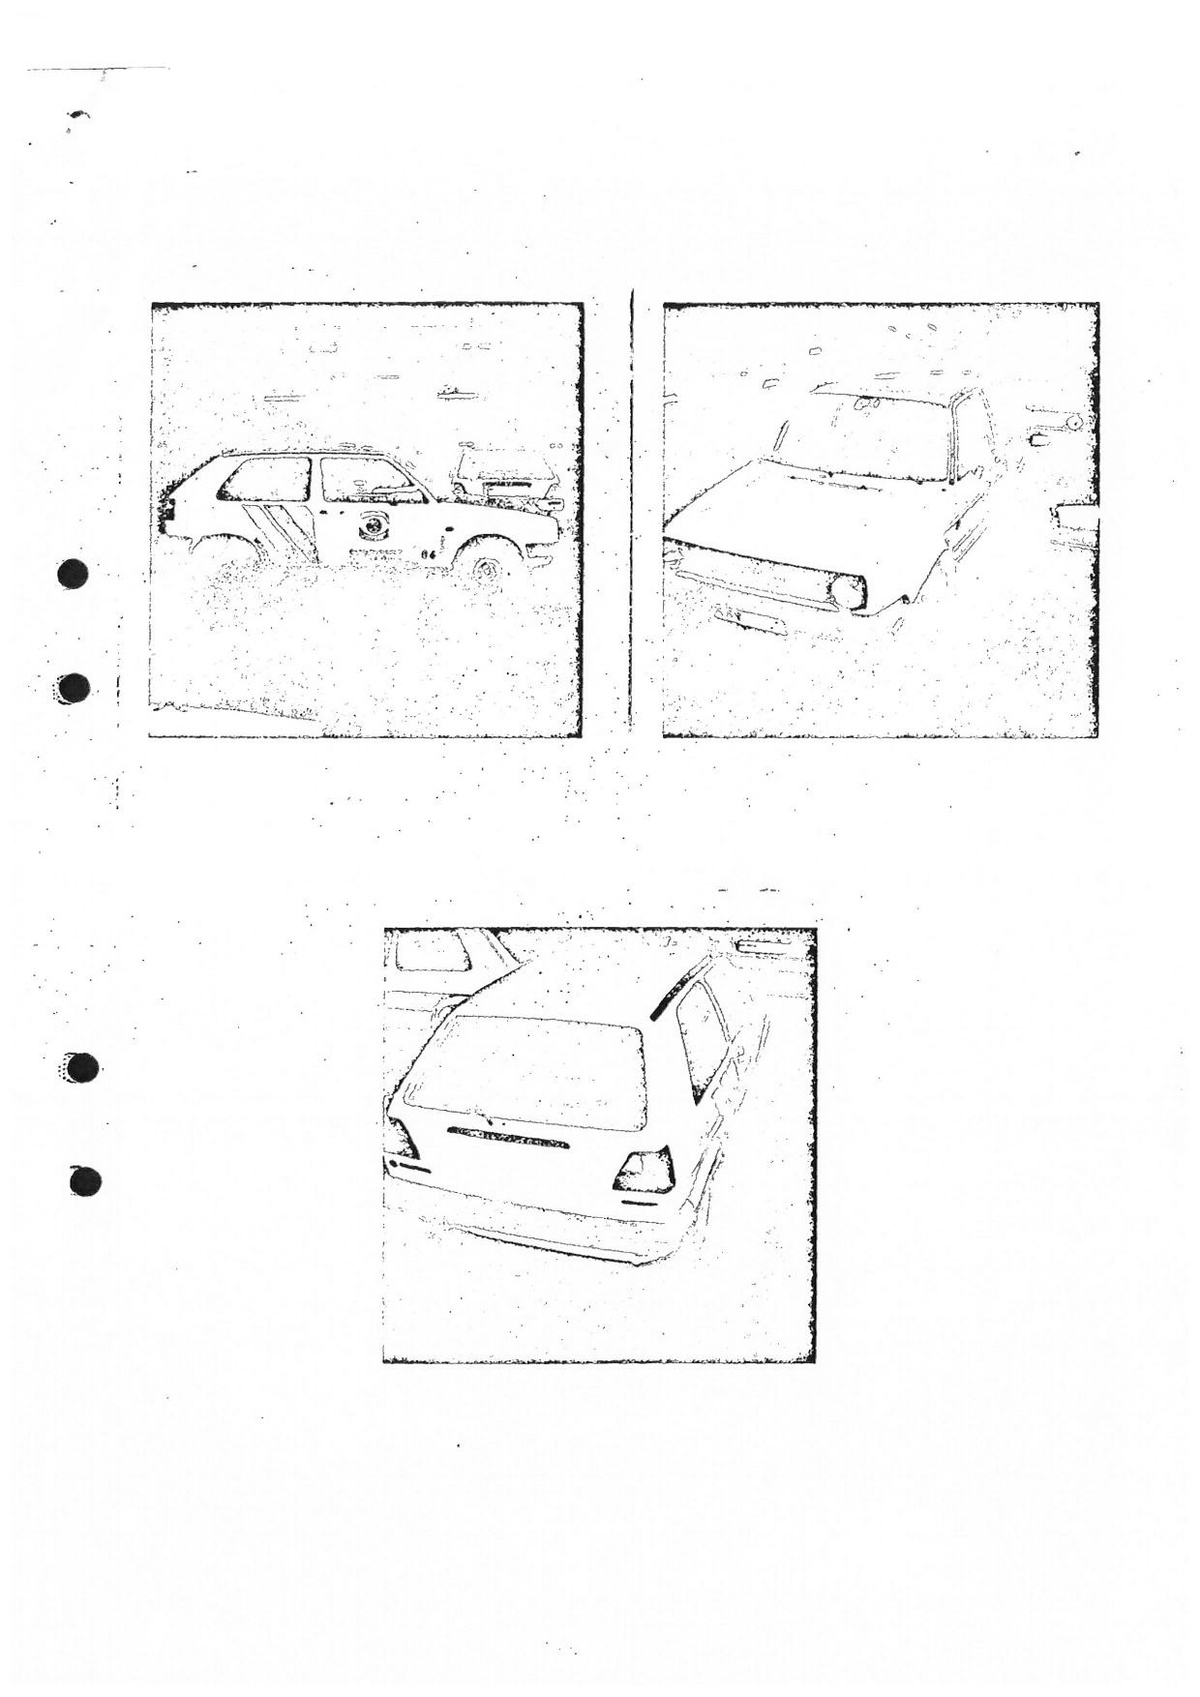 Pol-1987-04-08 EBC2327-21 Polisbil-kommunikationsradio-utanför-bostaden.pdf